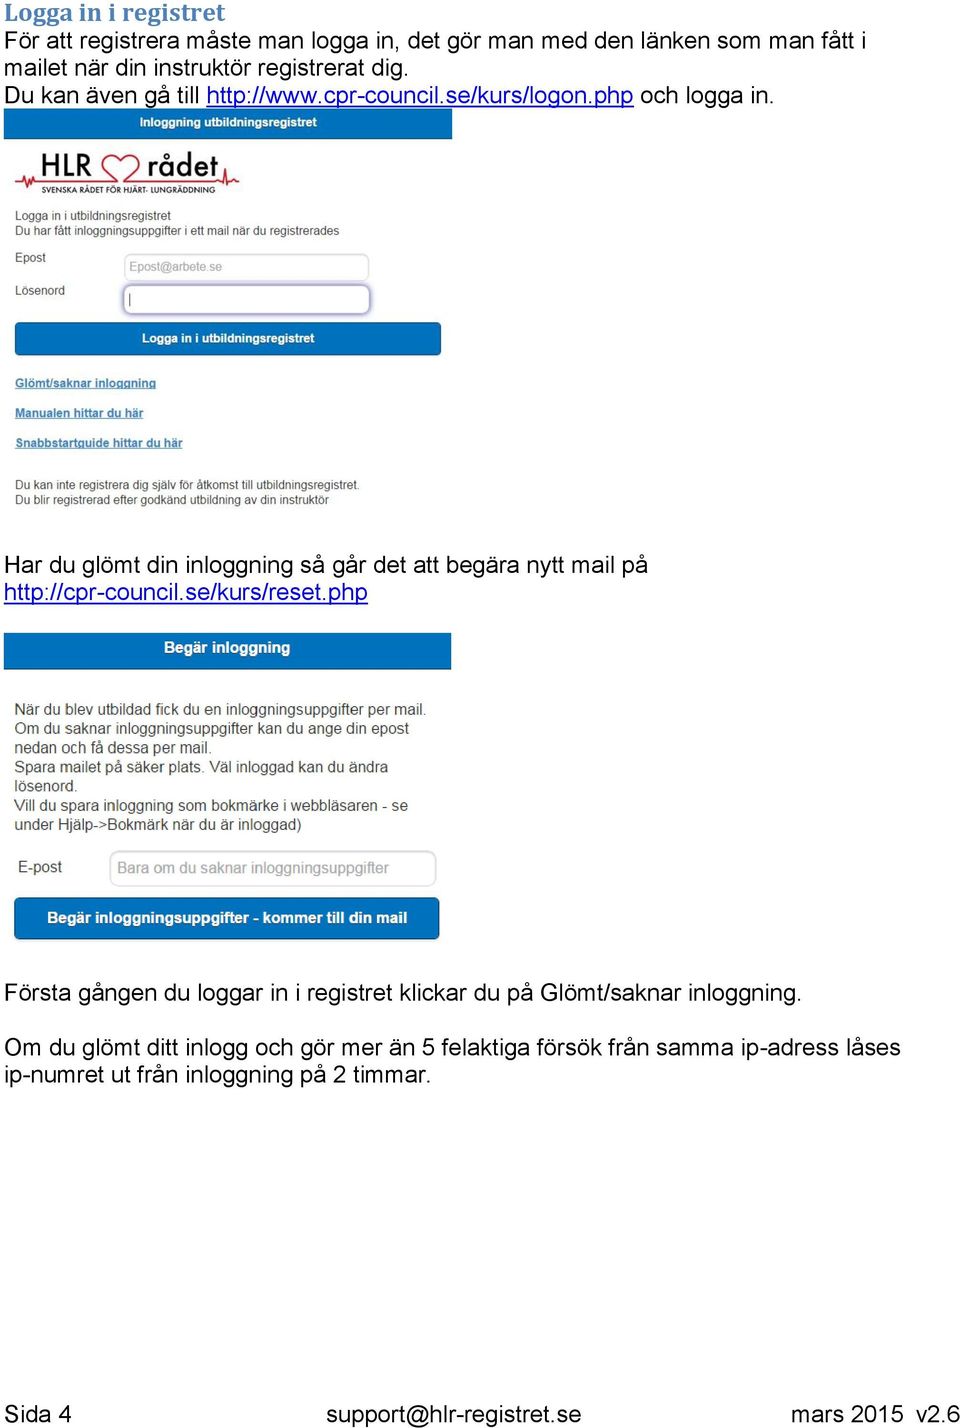 Har du glömt din inloggning så går det att begära nytt mail på http://cpr-council.se/kurs/reset.